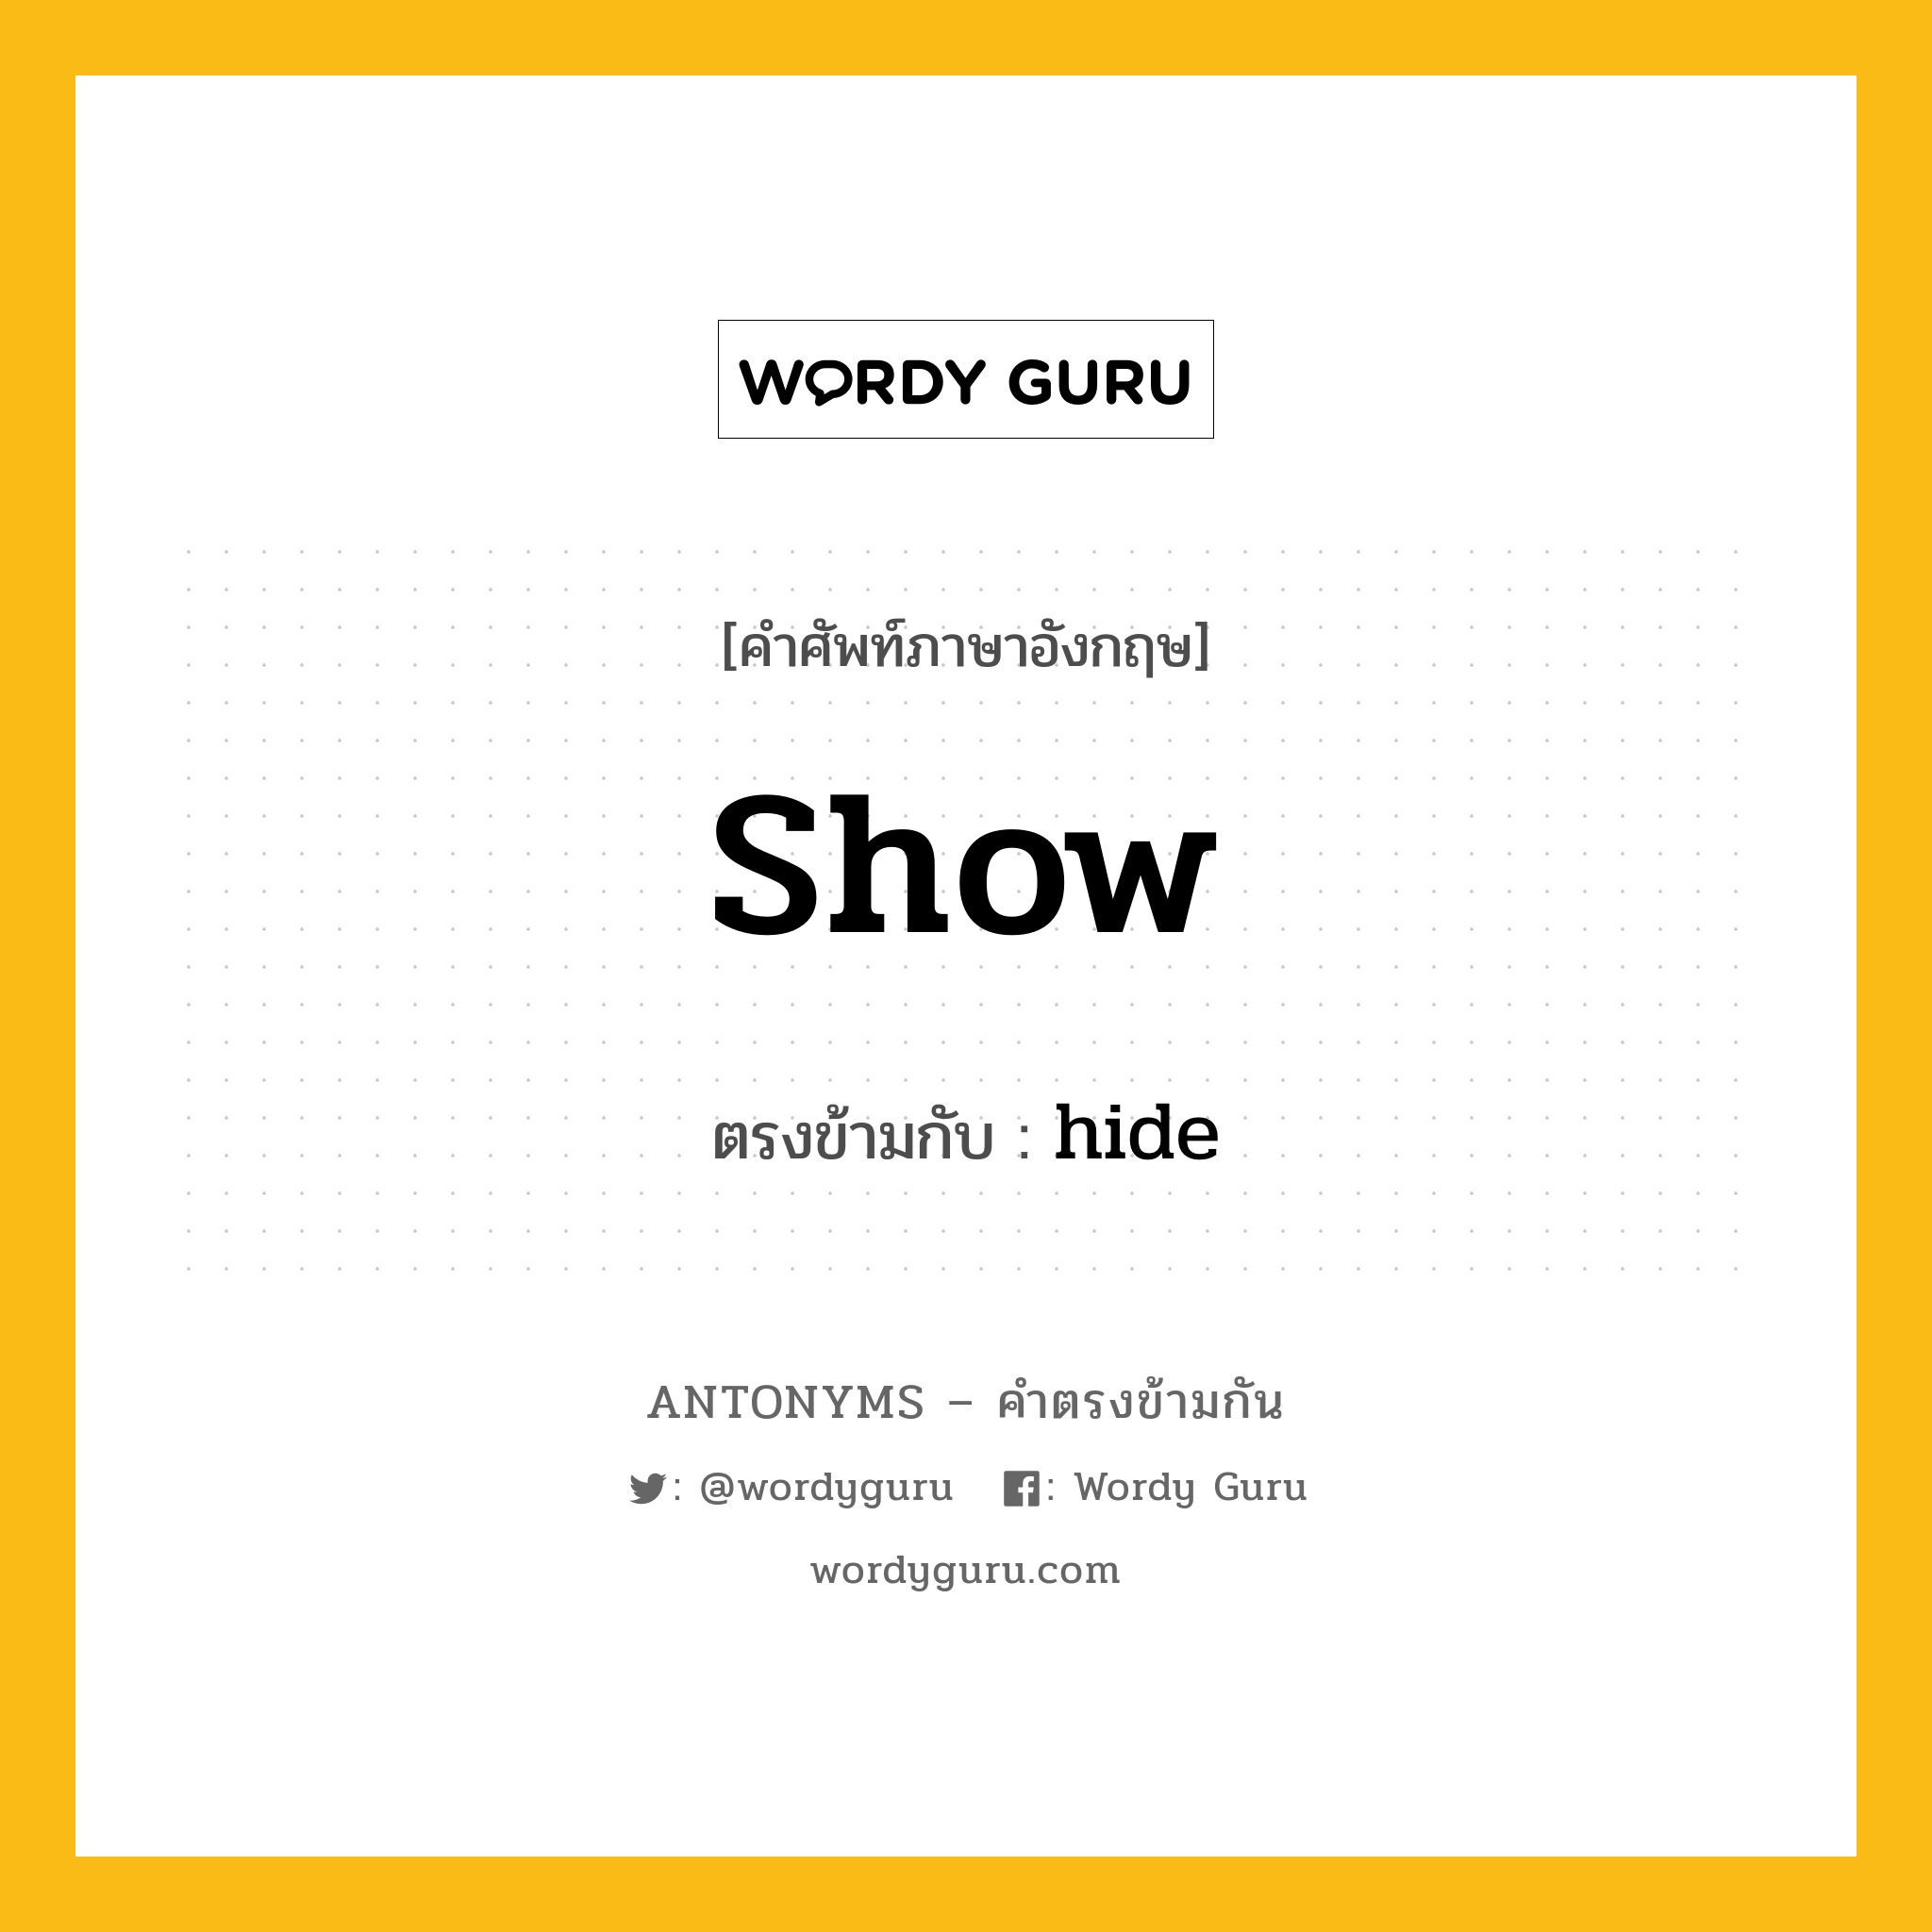 show เป็นคำตรงข้ามกับคำไหนบ้าง?, คำศัพท์ภาษาอังกฤษ show ตรงข้ามกับ hide หมวด hide